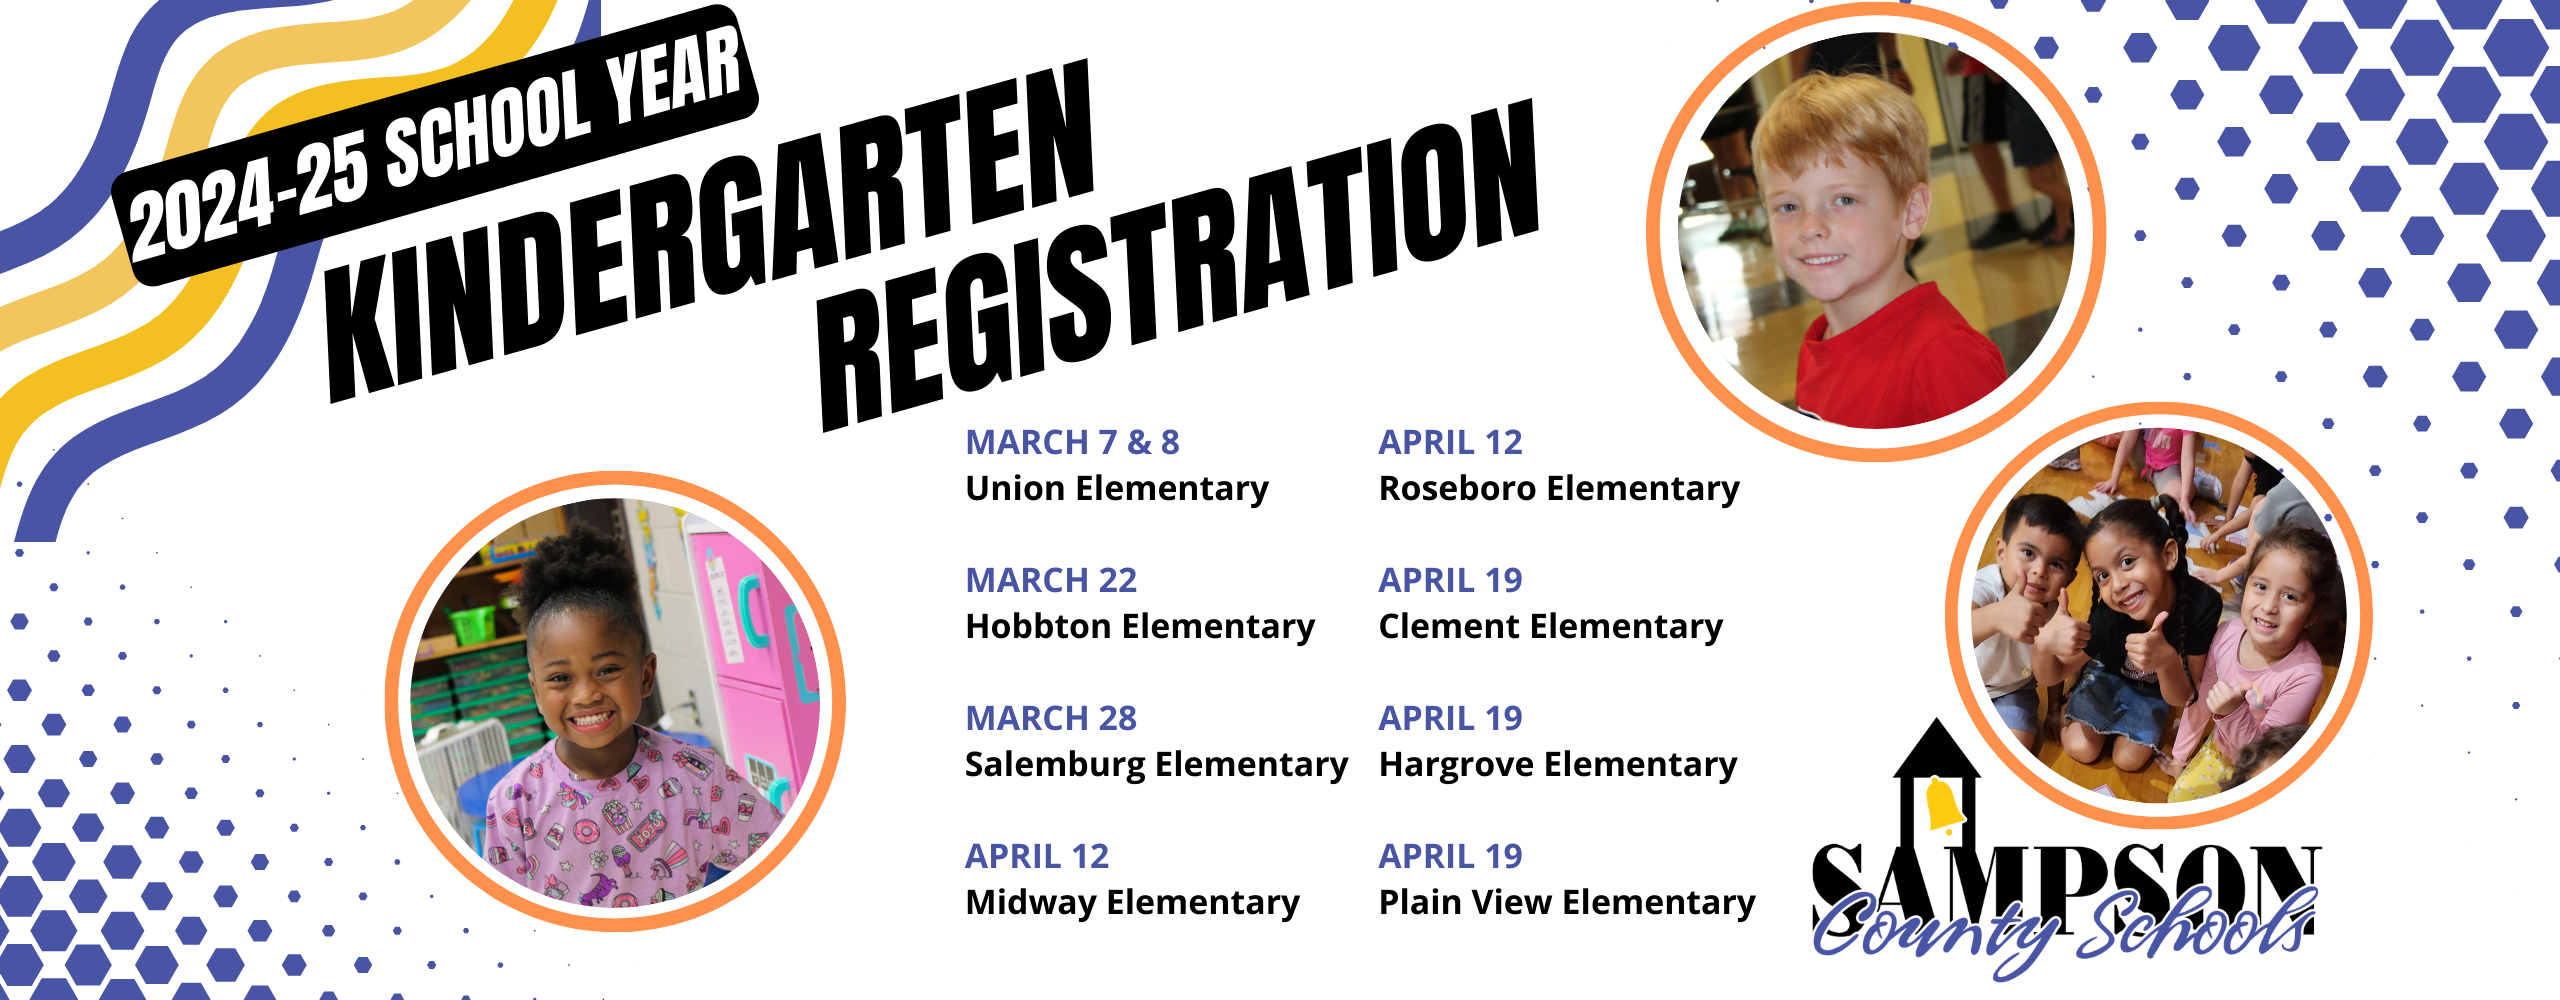 schedule of kindergarten registrations